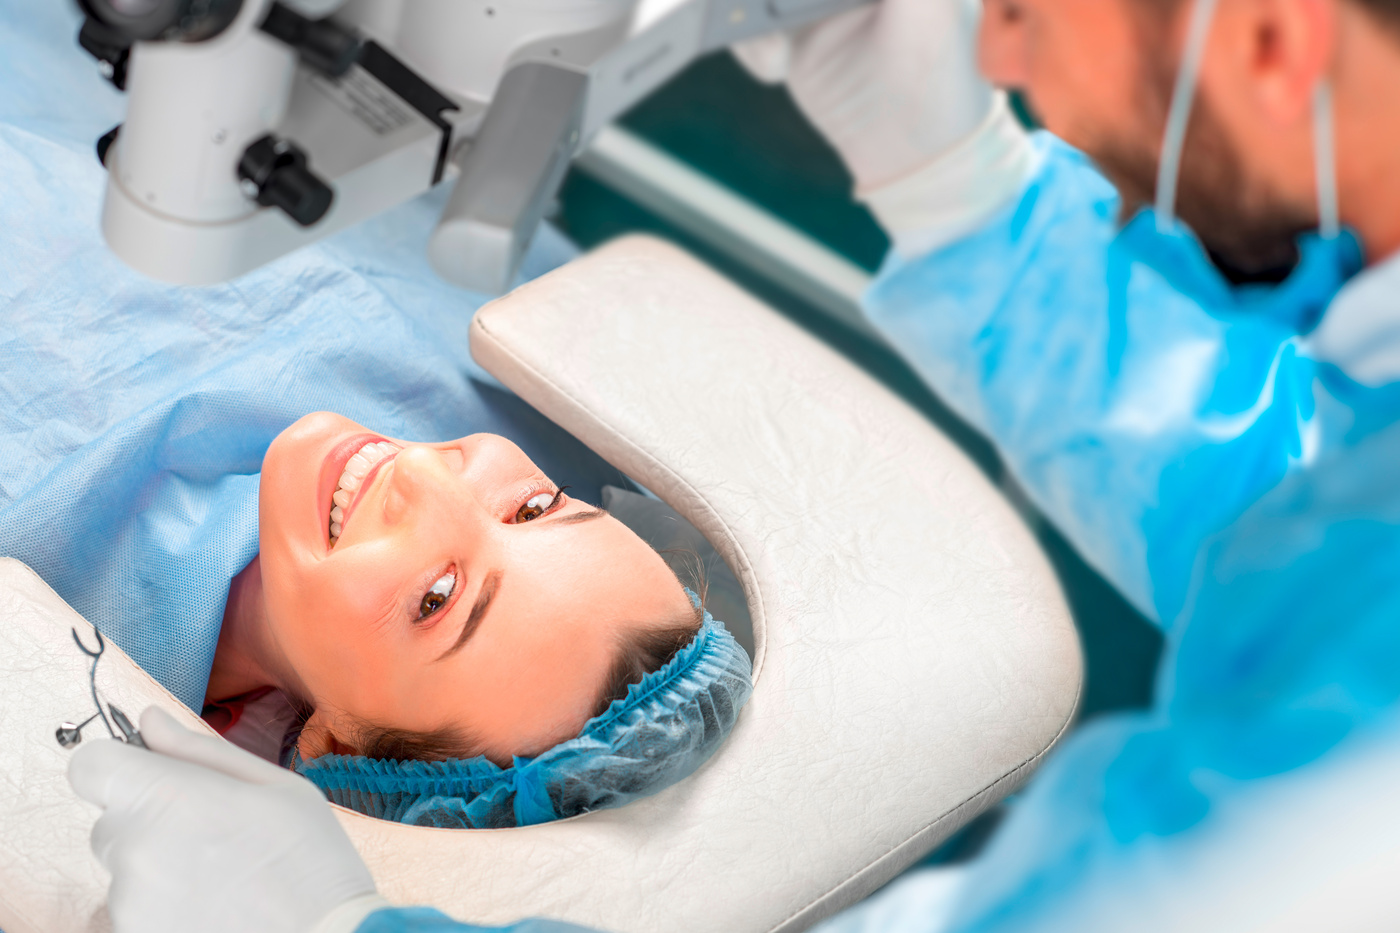 Femme allongée sous la lampe du fauteuil de chirurgie et souriant à l'objectif